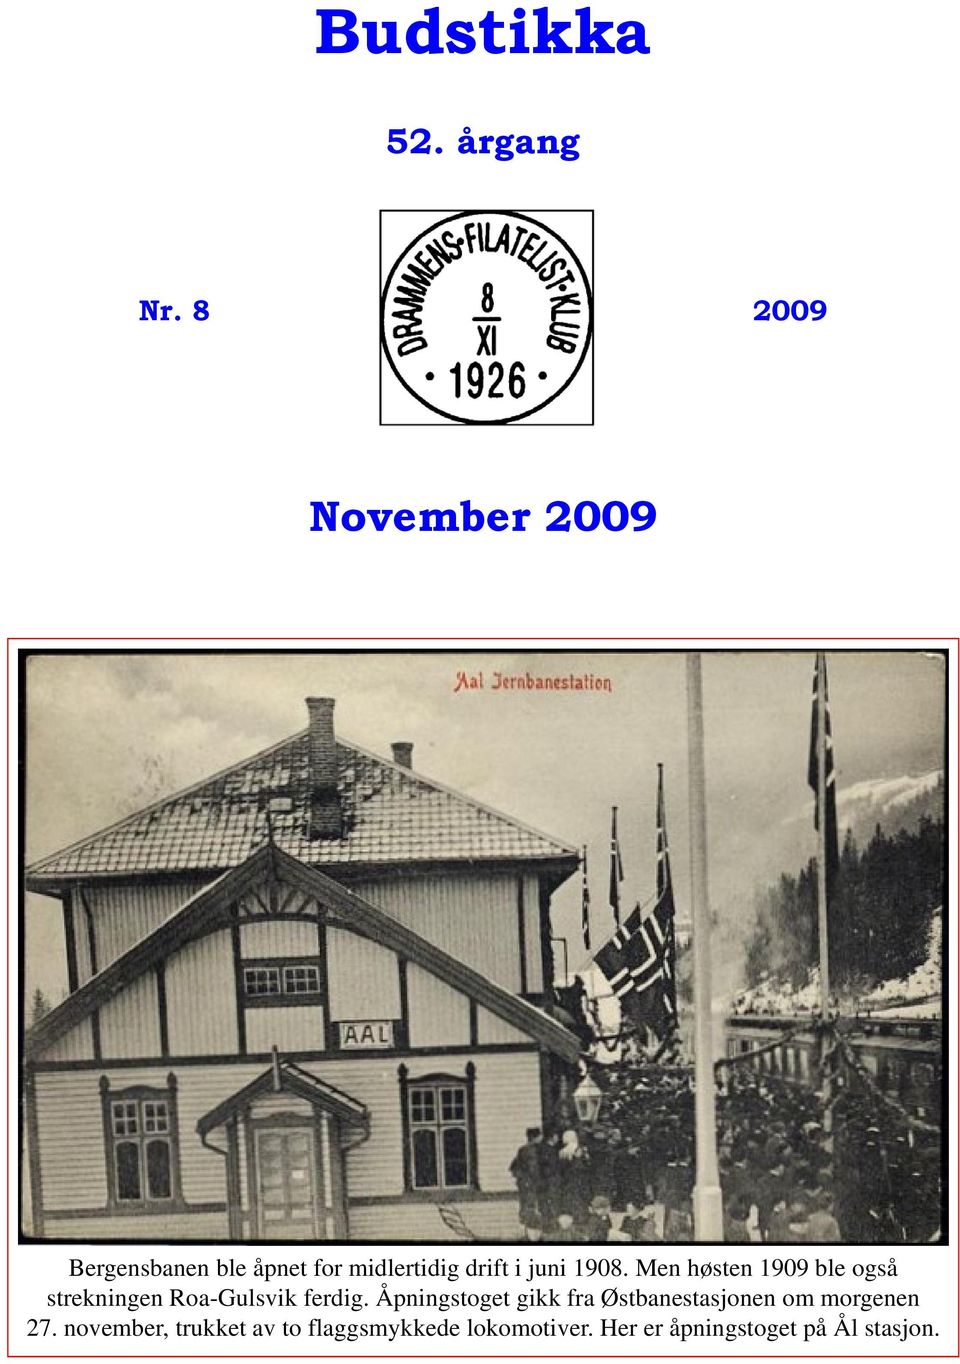 1908. Men høsten 1909 ble også strekningen Roa-Gulsvik ferdig.